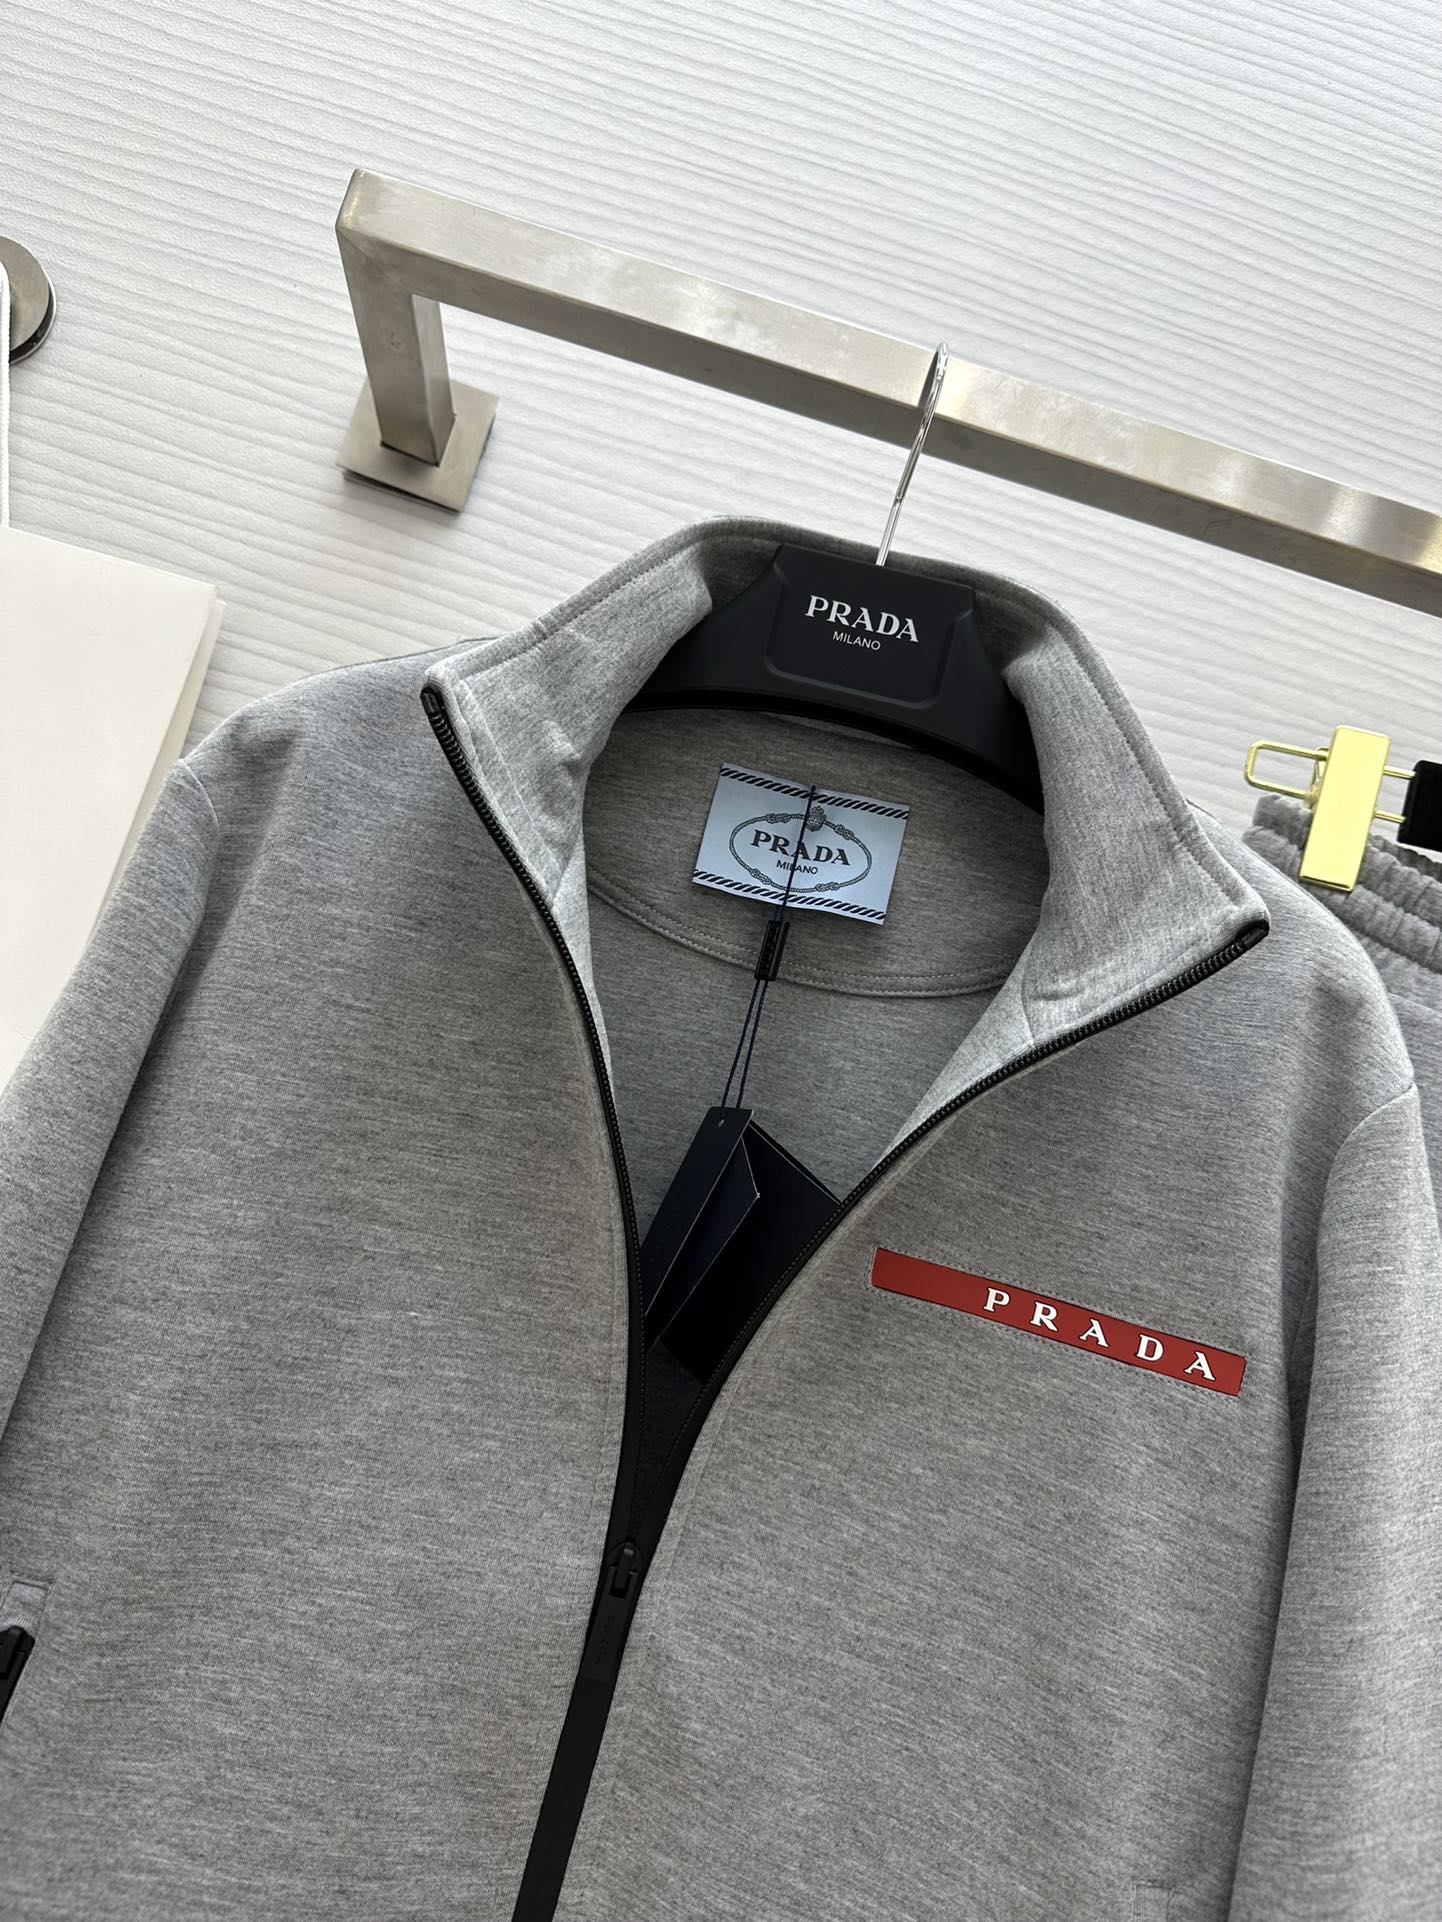 #Pradএ24春夏最新款时髦休闲套装立领夹克外套松紧腰休闲裤logo胶牌装饰很好搭配的灰色系一套上身更